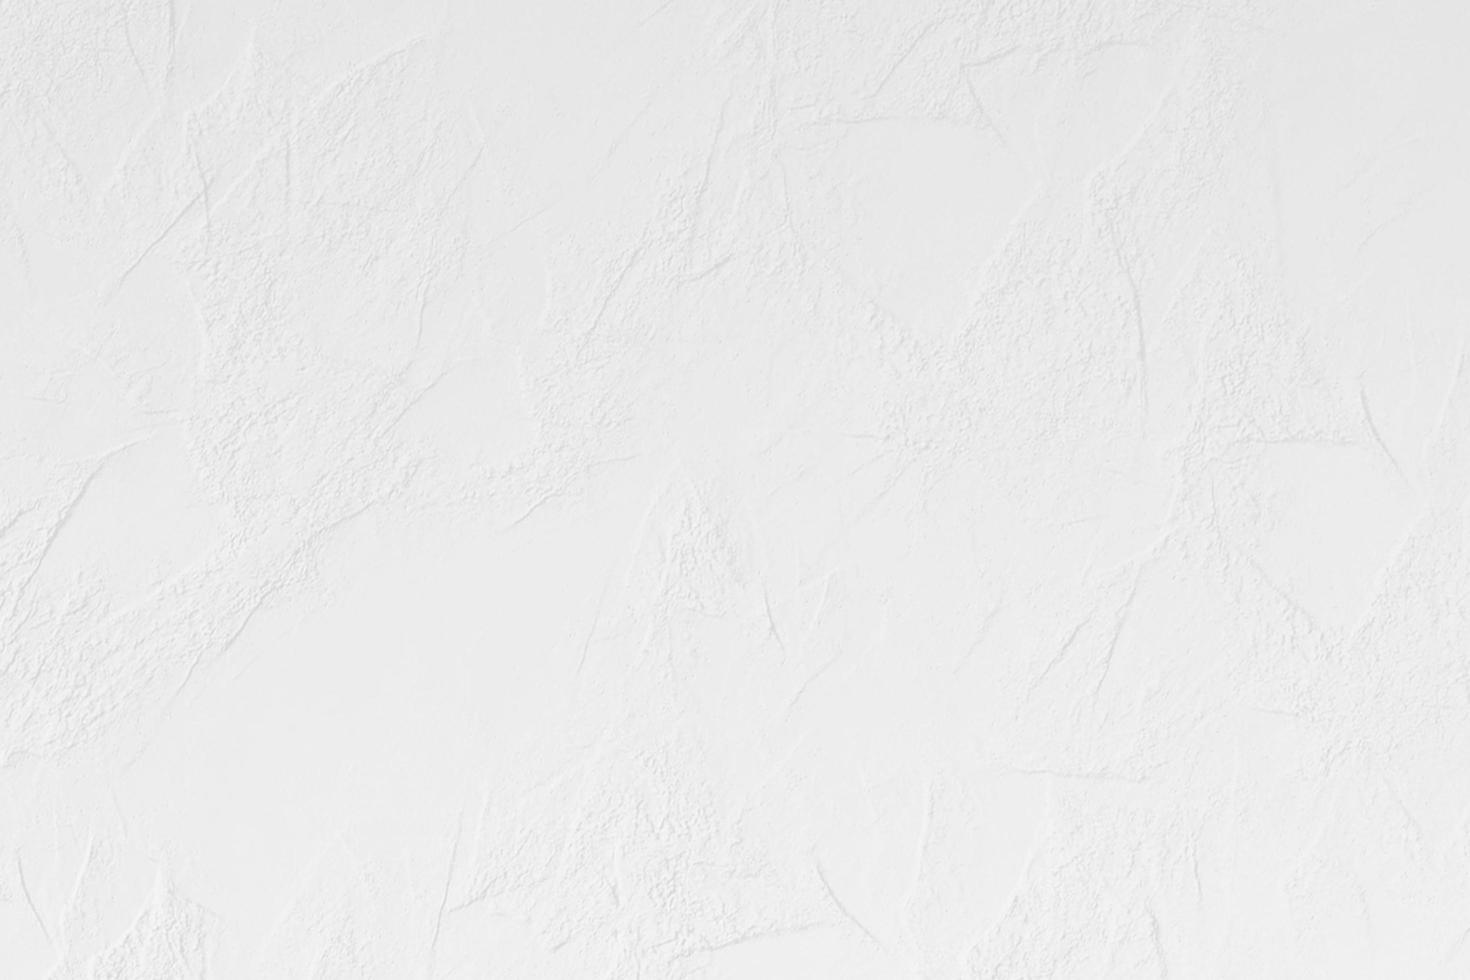 gris fondo textura abstracto blanco gris claro plata pared espalda foto